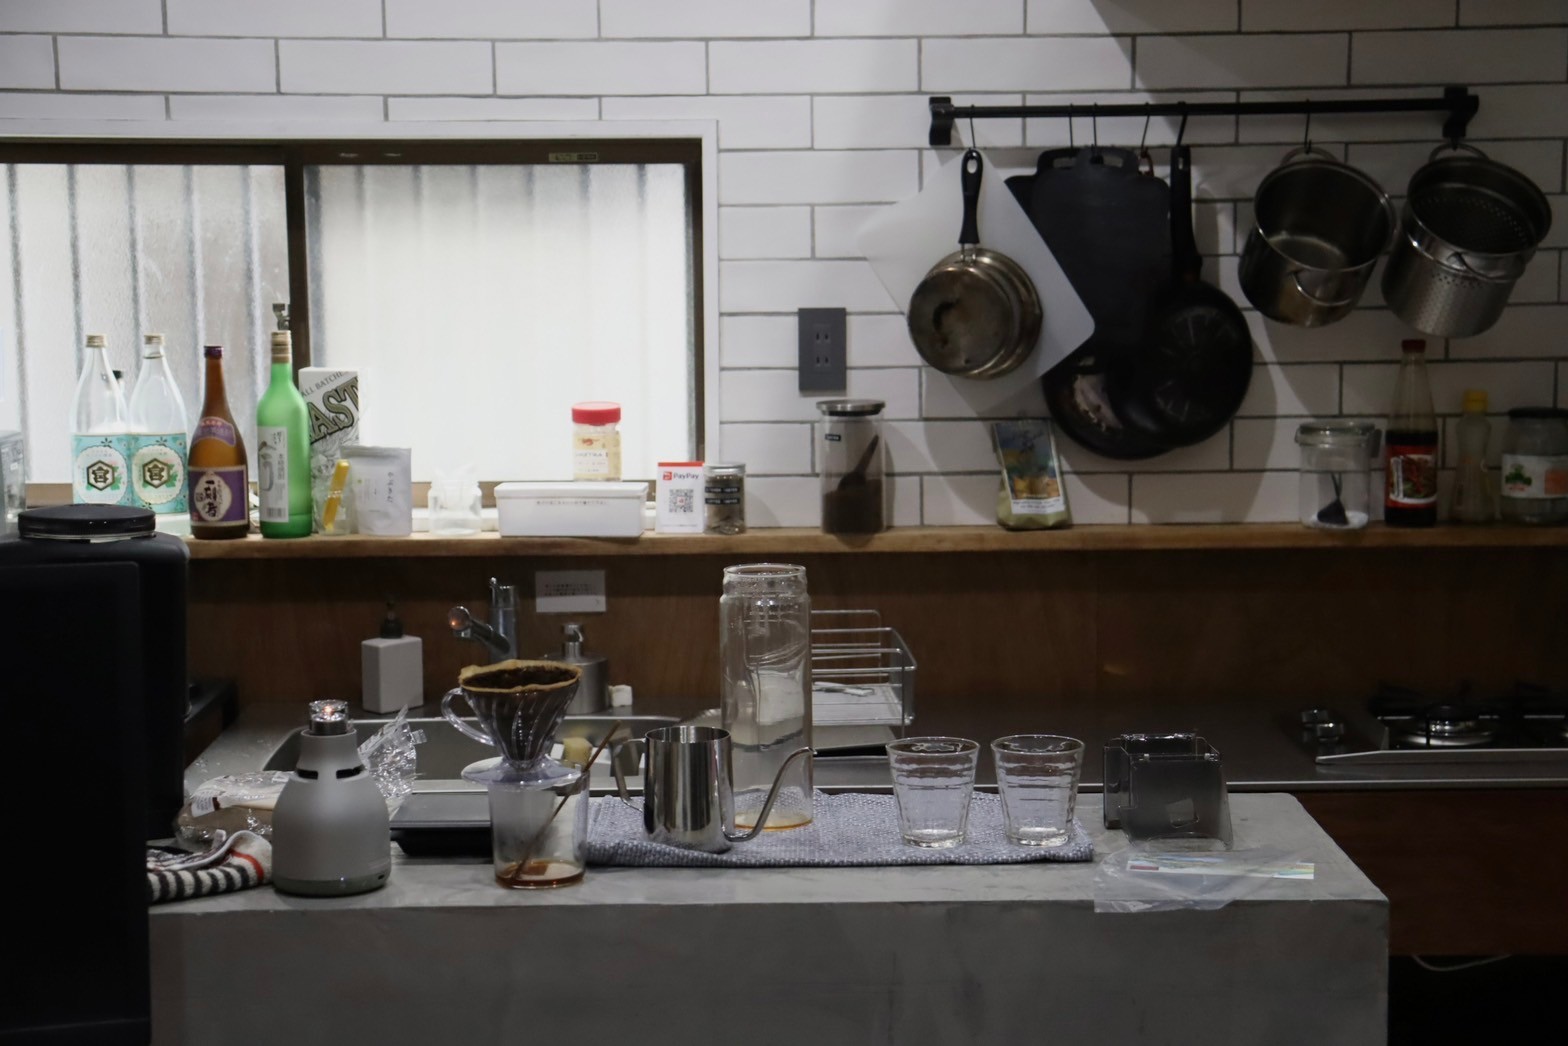 キッチンを正面から撮った写真。右手背景にはフライパンや鍋が引っ掛けられていて、カウンターには酒の瓶や調味料が並んでいる。手前にはコーヒーを淹れるための器具、ポット、たくさんのグラスが机に置いてある。